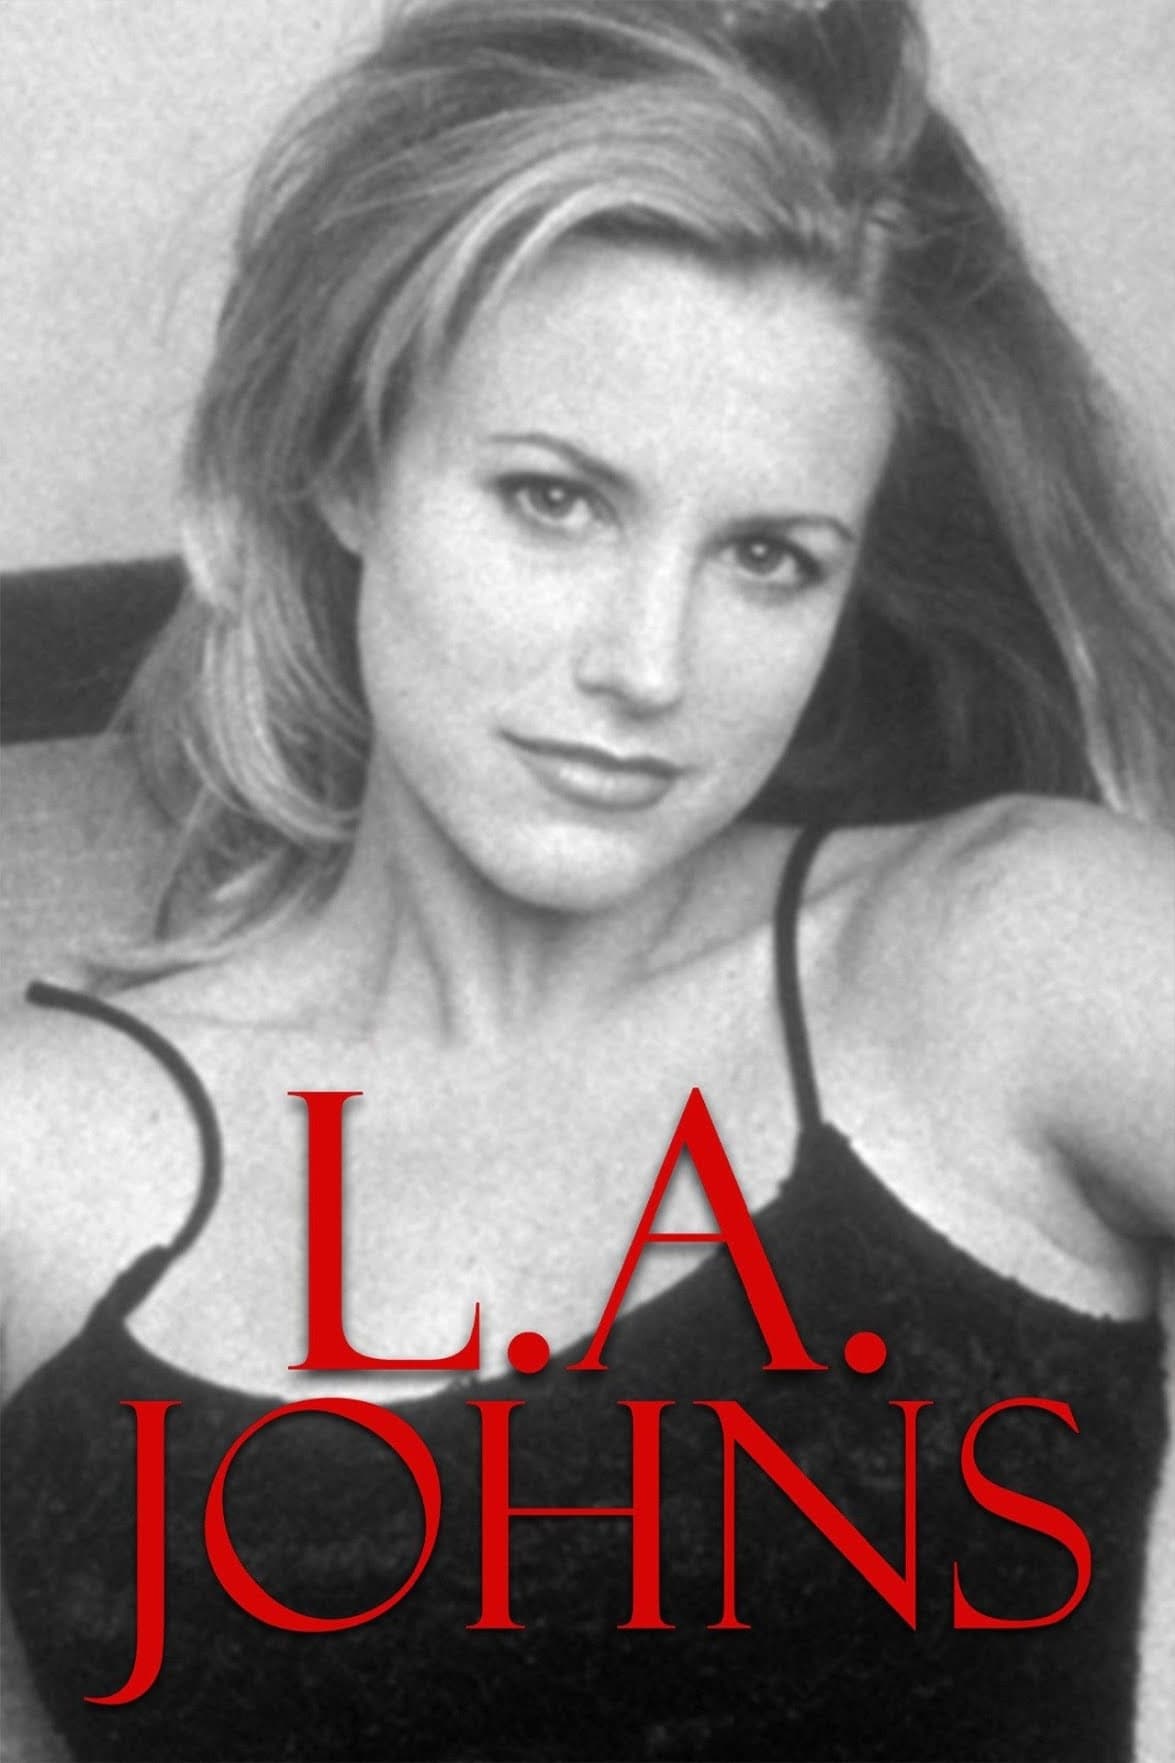 L.A. Johns (1997)